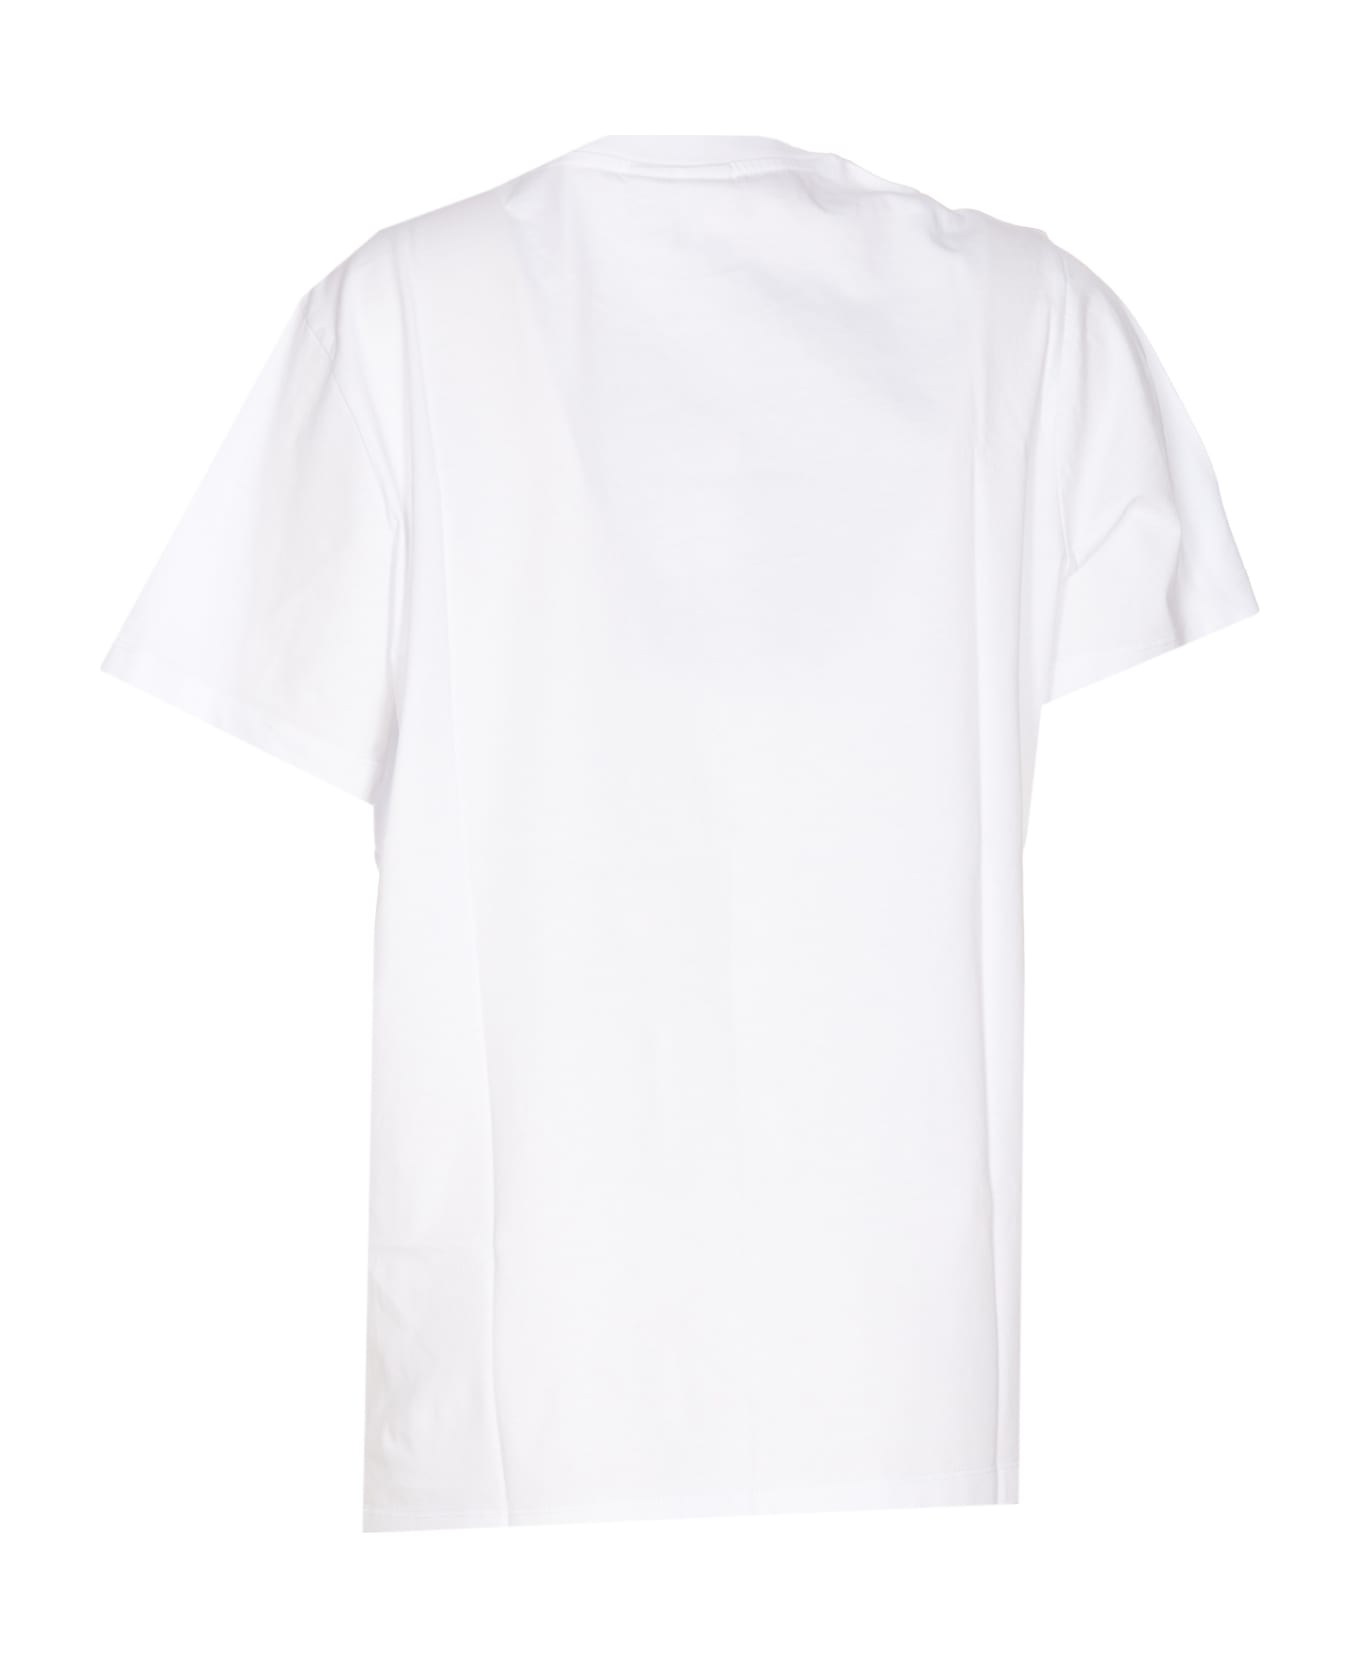 Ganni Cats T-shirt - White